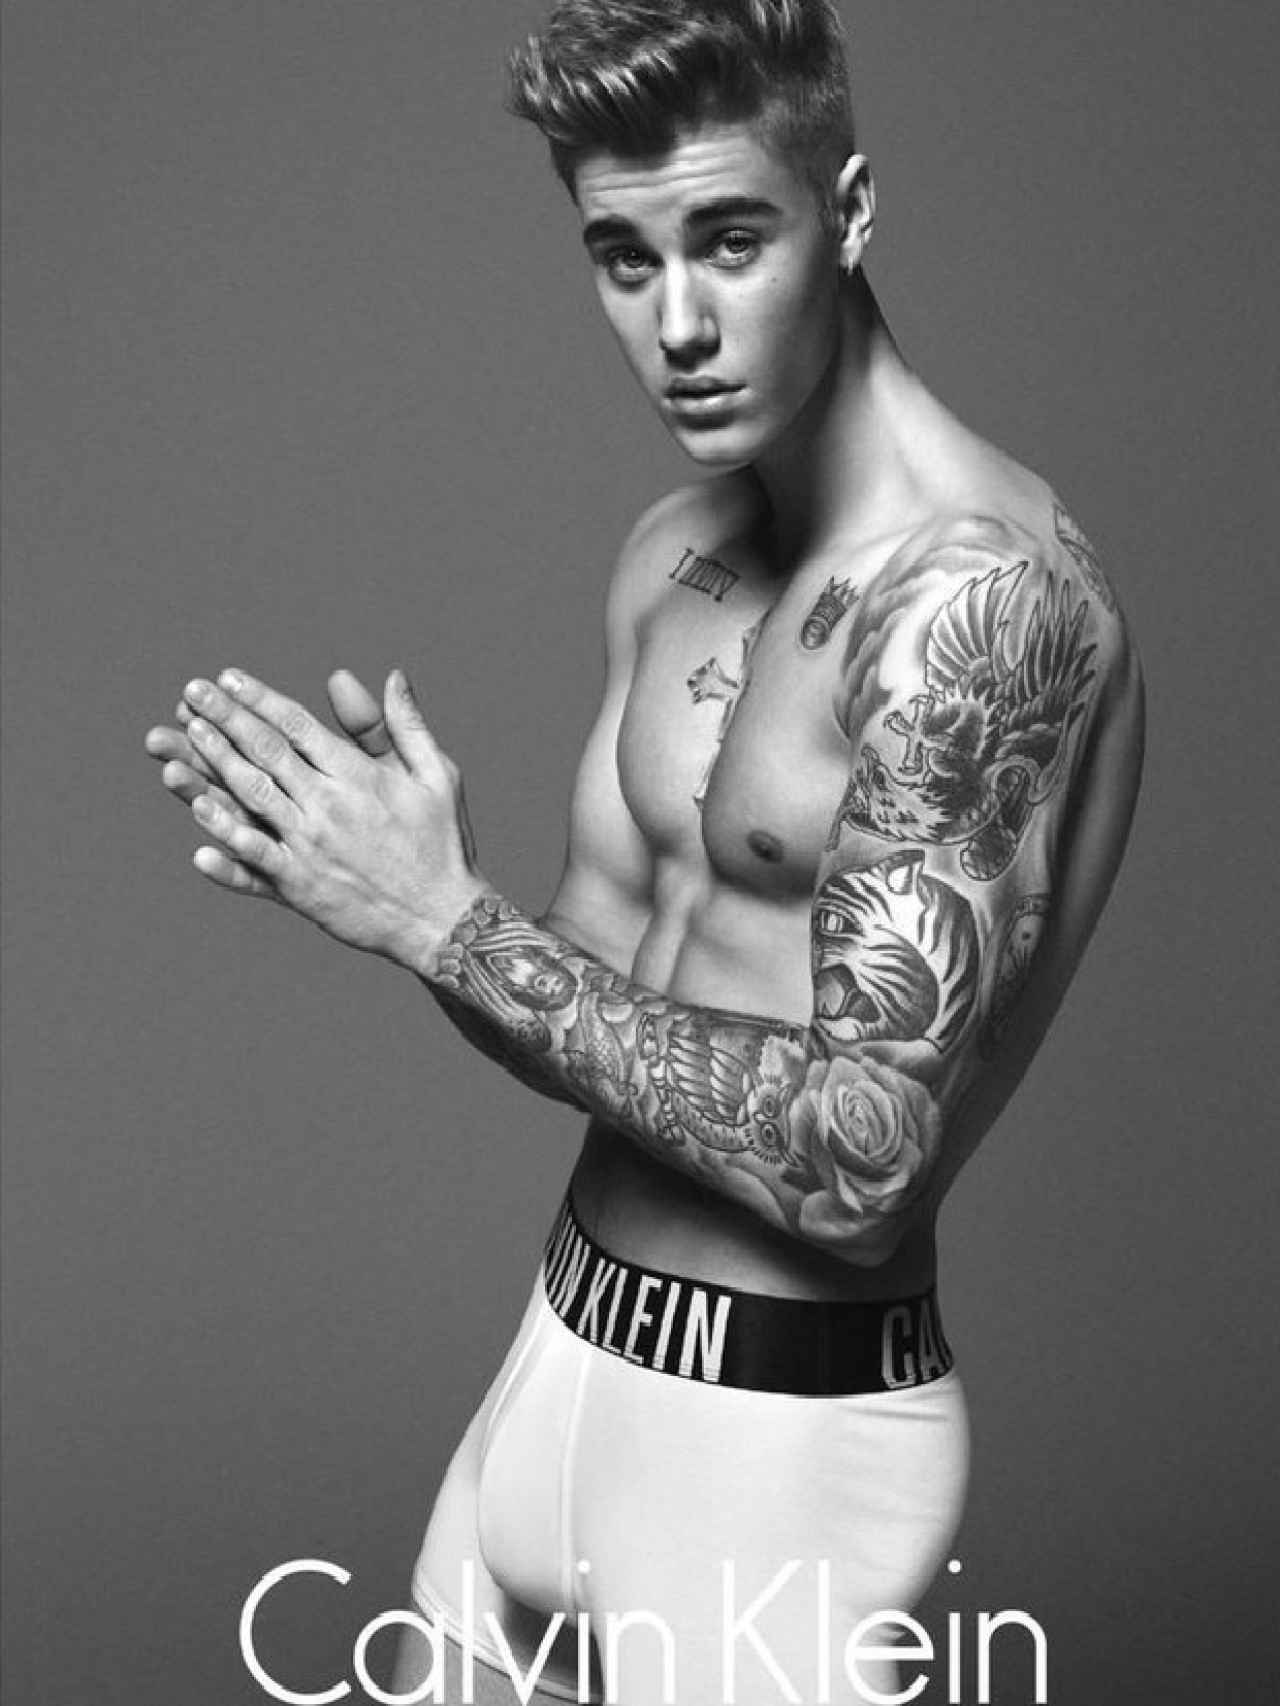 La imagen ya icónica de Justin Bieber en una campaña de calzoncillos